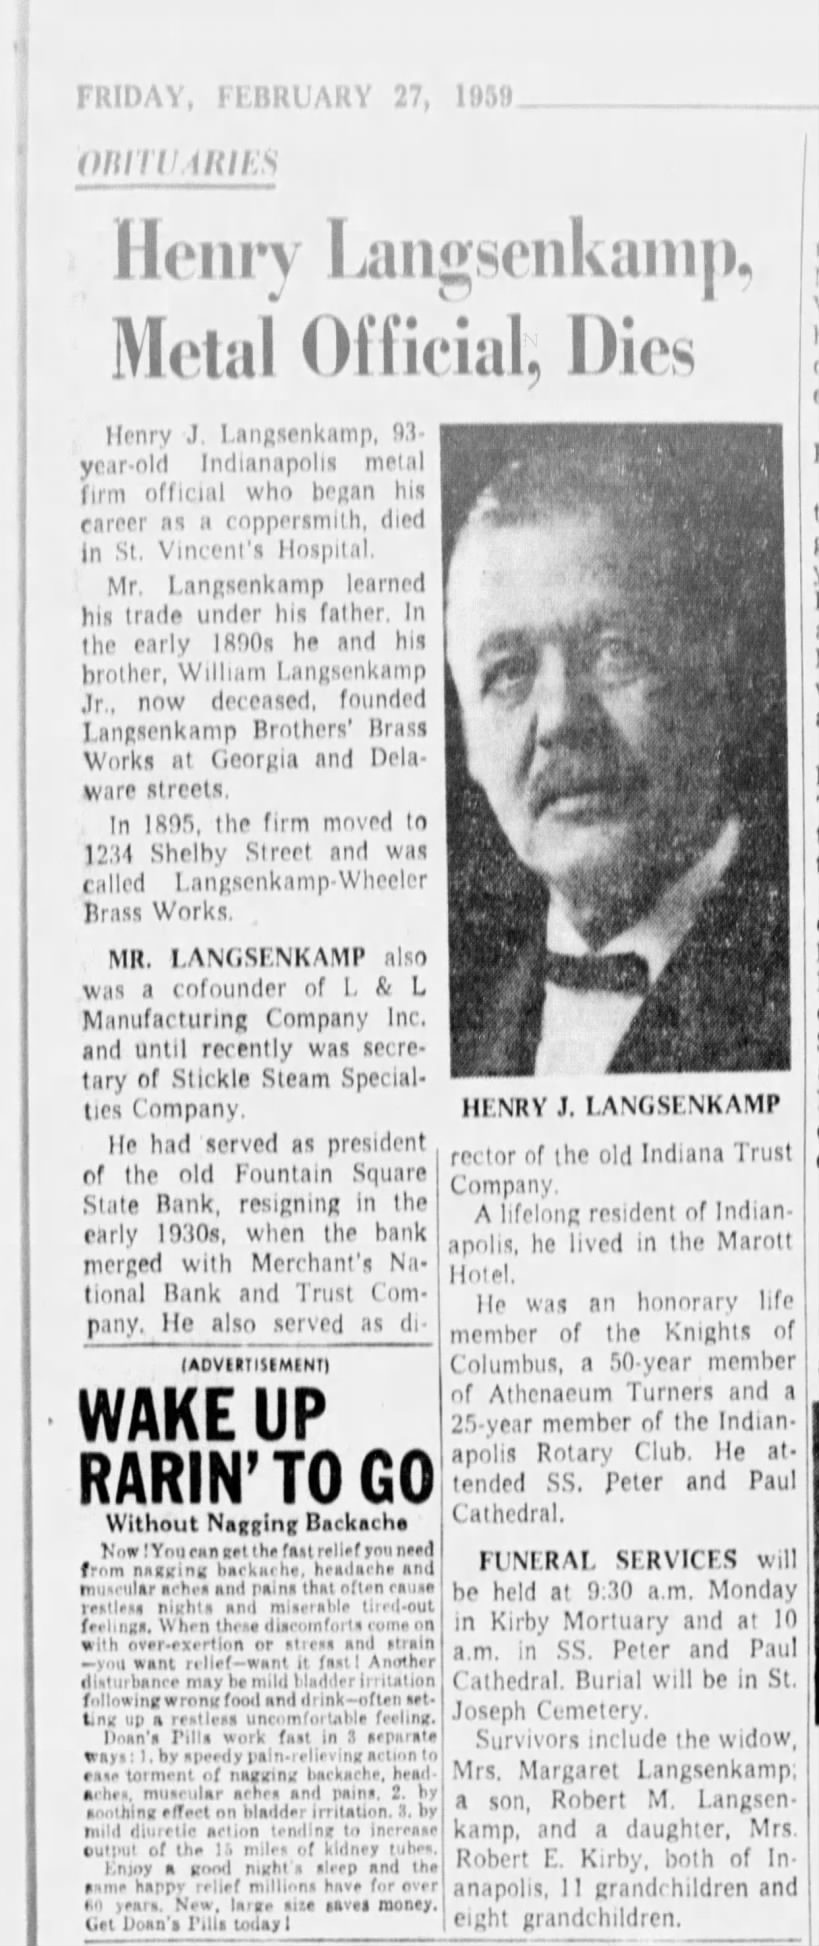 Henry J. Langsenkamp, Sr. death notice